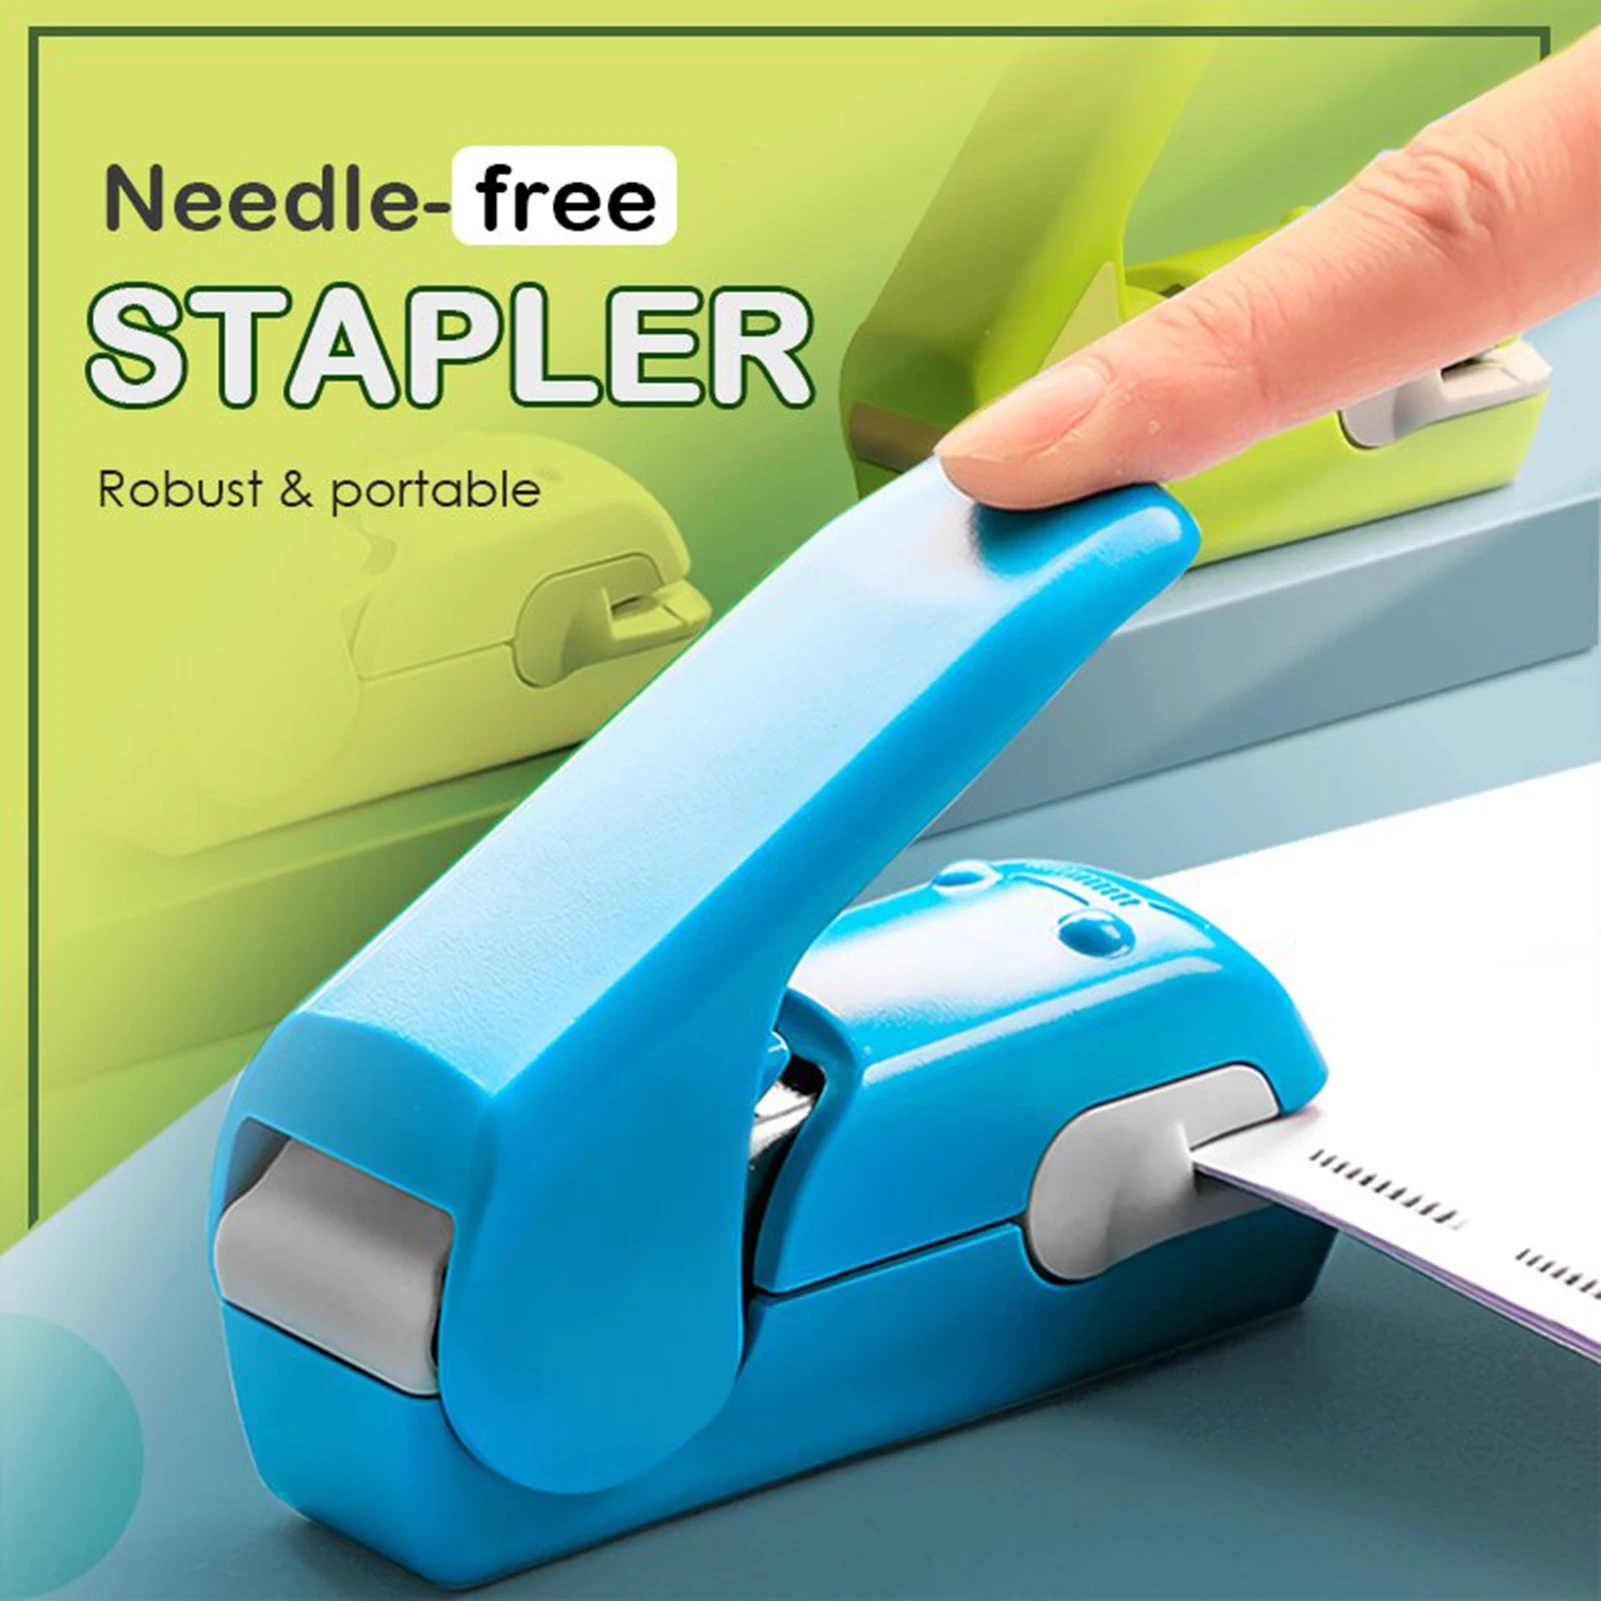 Staple Free Stapler Time Saving Effortless Needle Free Handhled Stapler Mini Portable Stapler with Staples Remover степлер